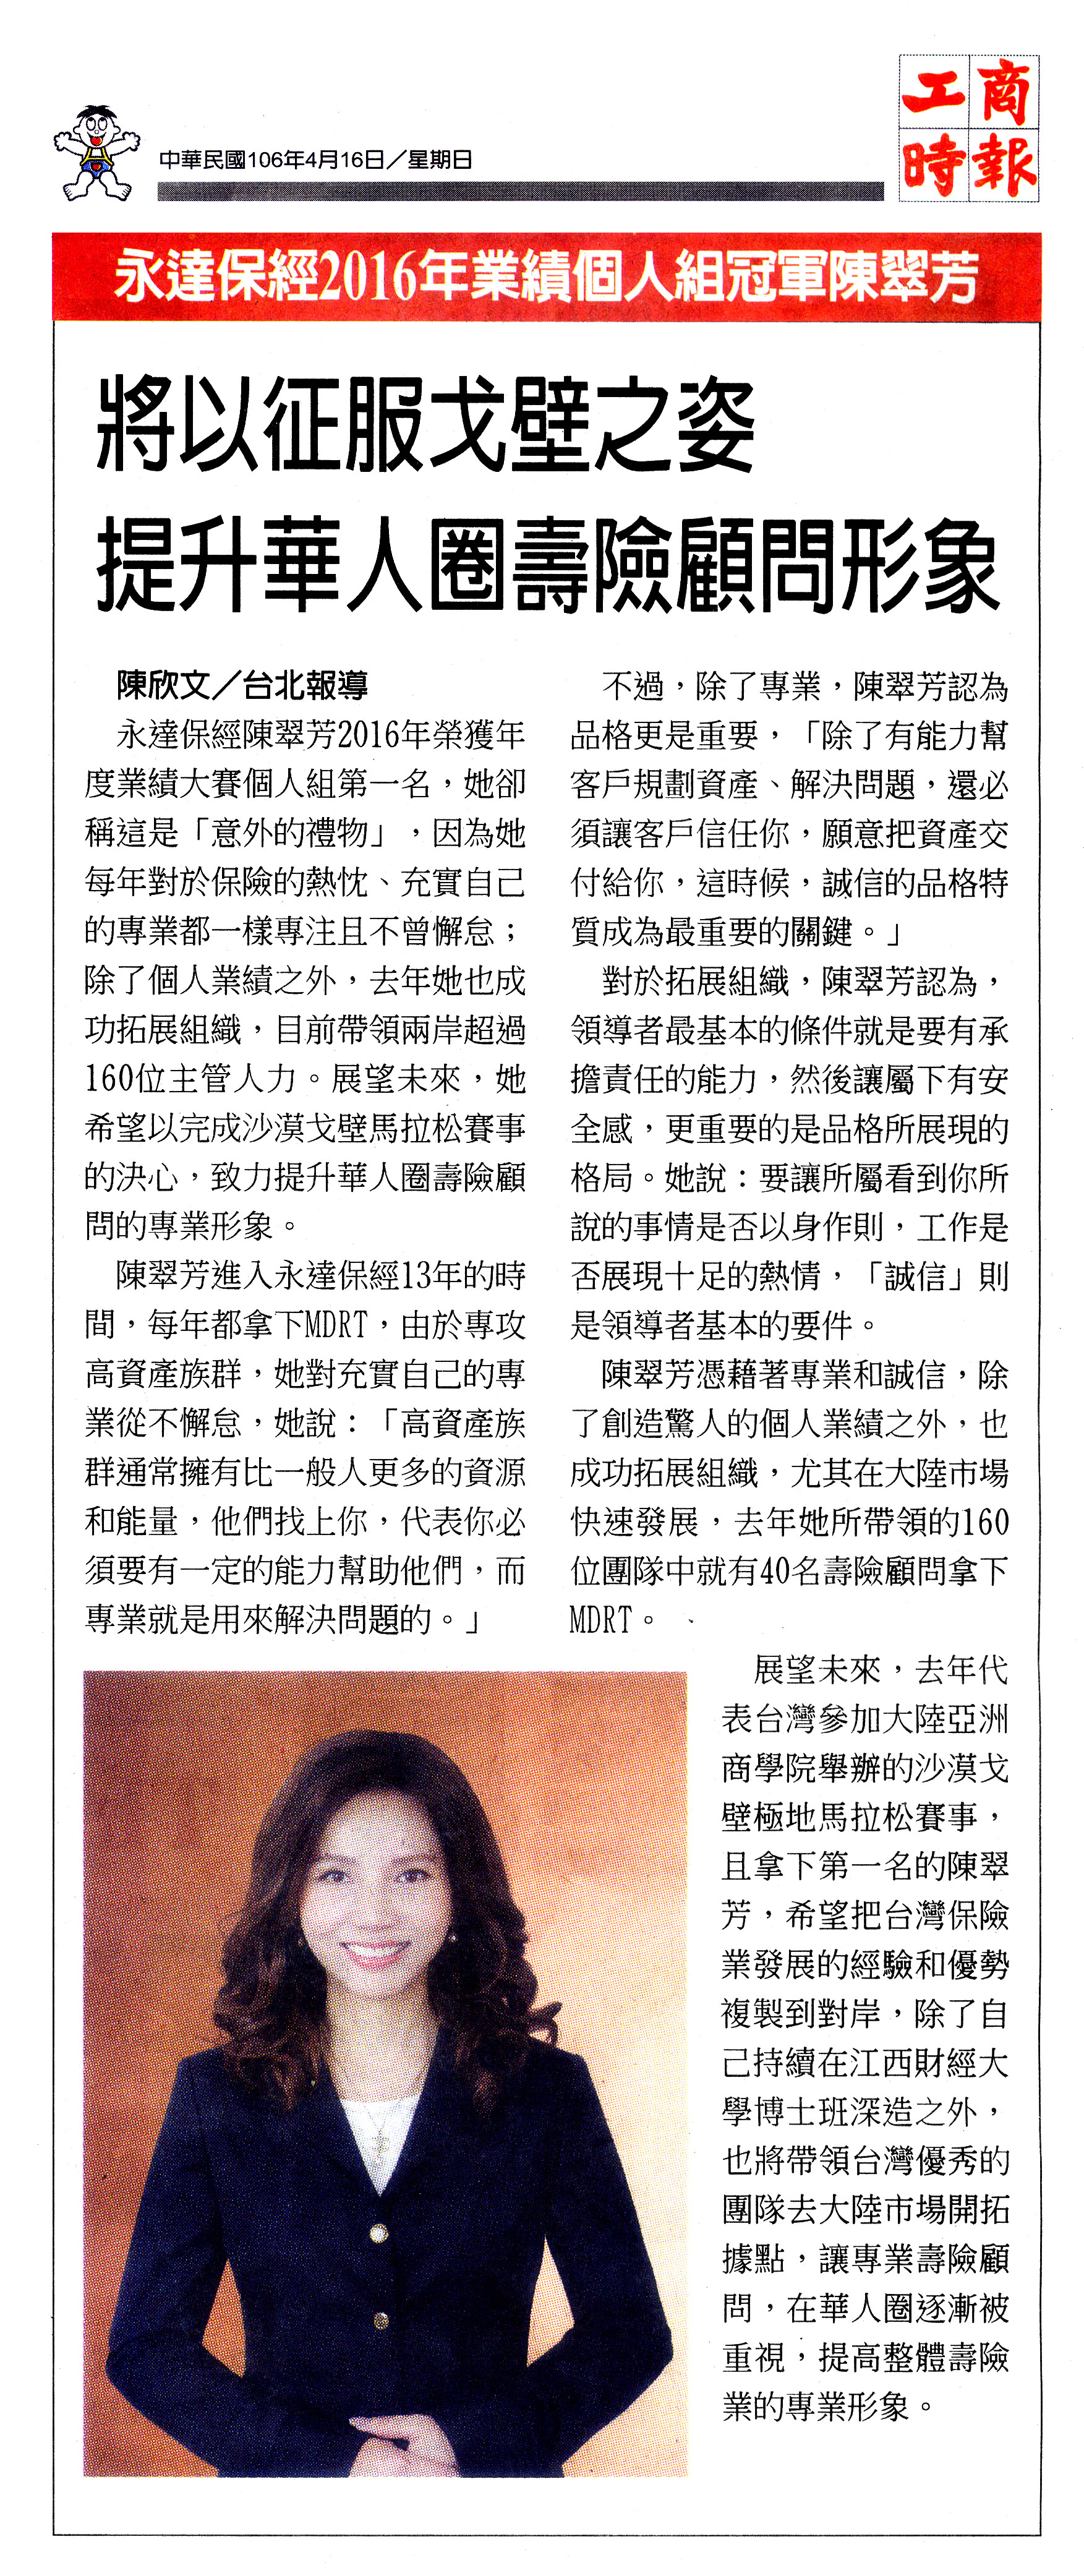 永達保經2016年業績個人組冠軍陳翠芳 將以征服戈壁之姿 提升華人圈壽險顧問形象